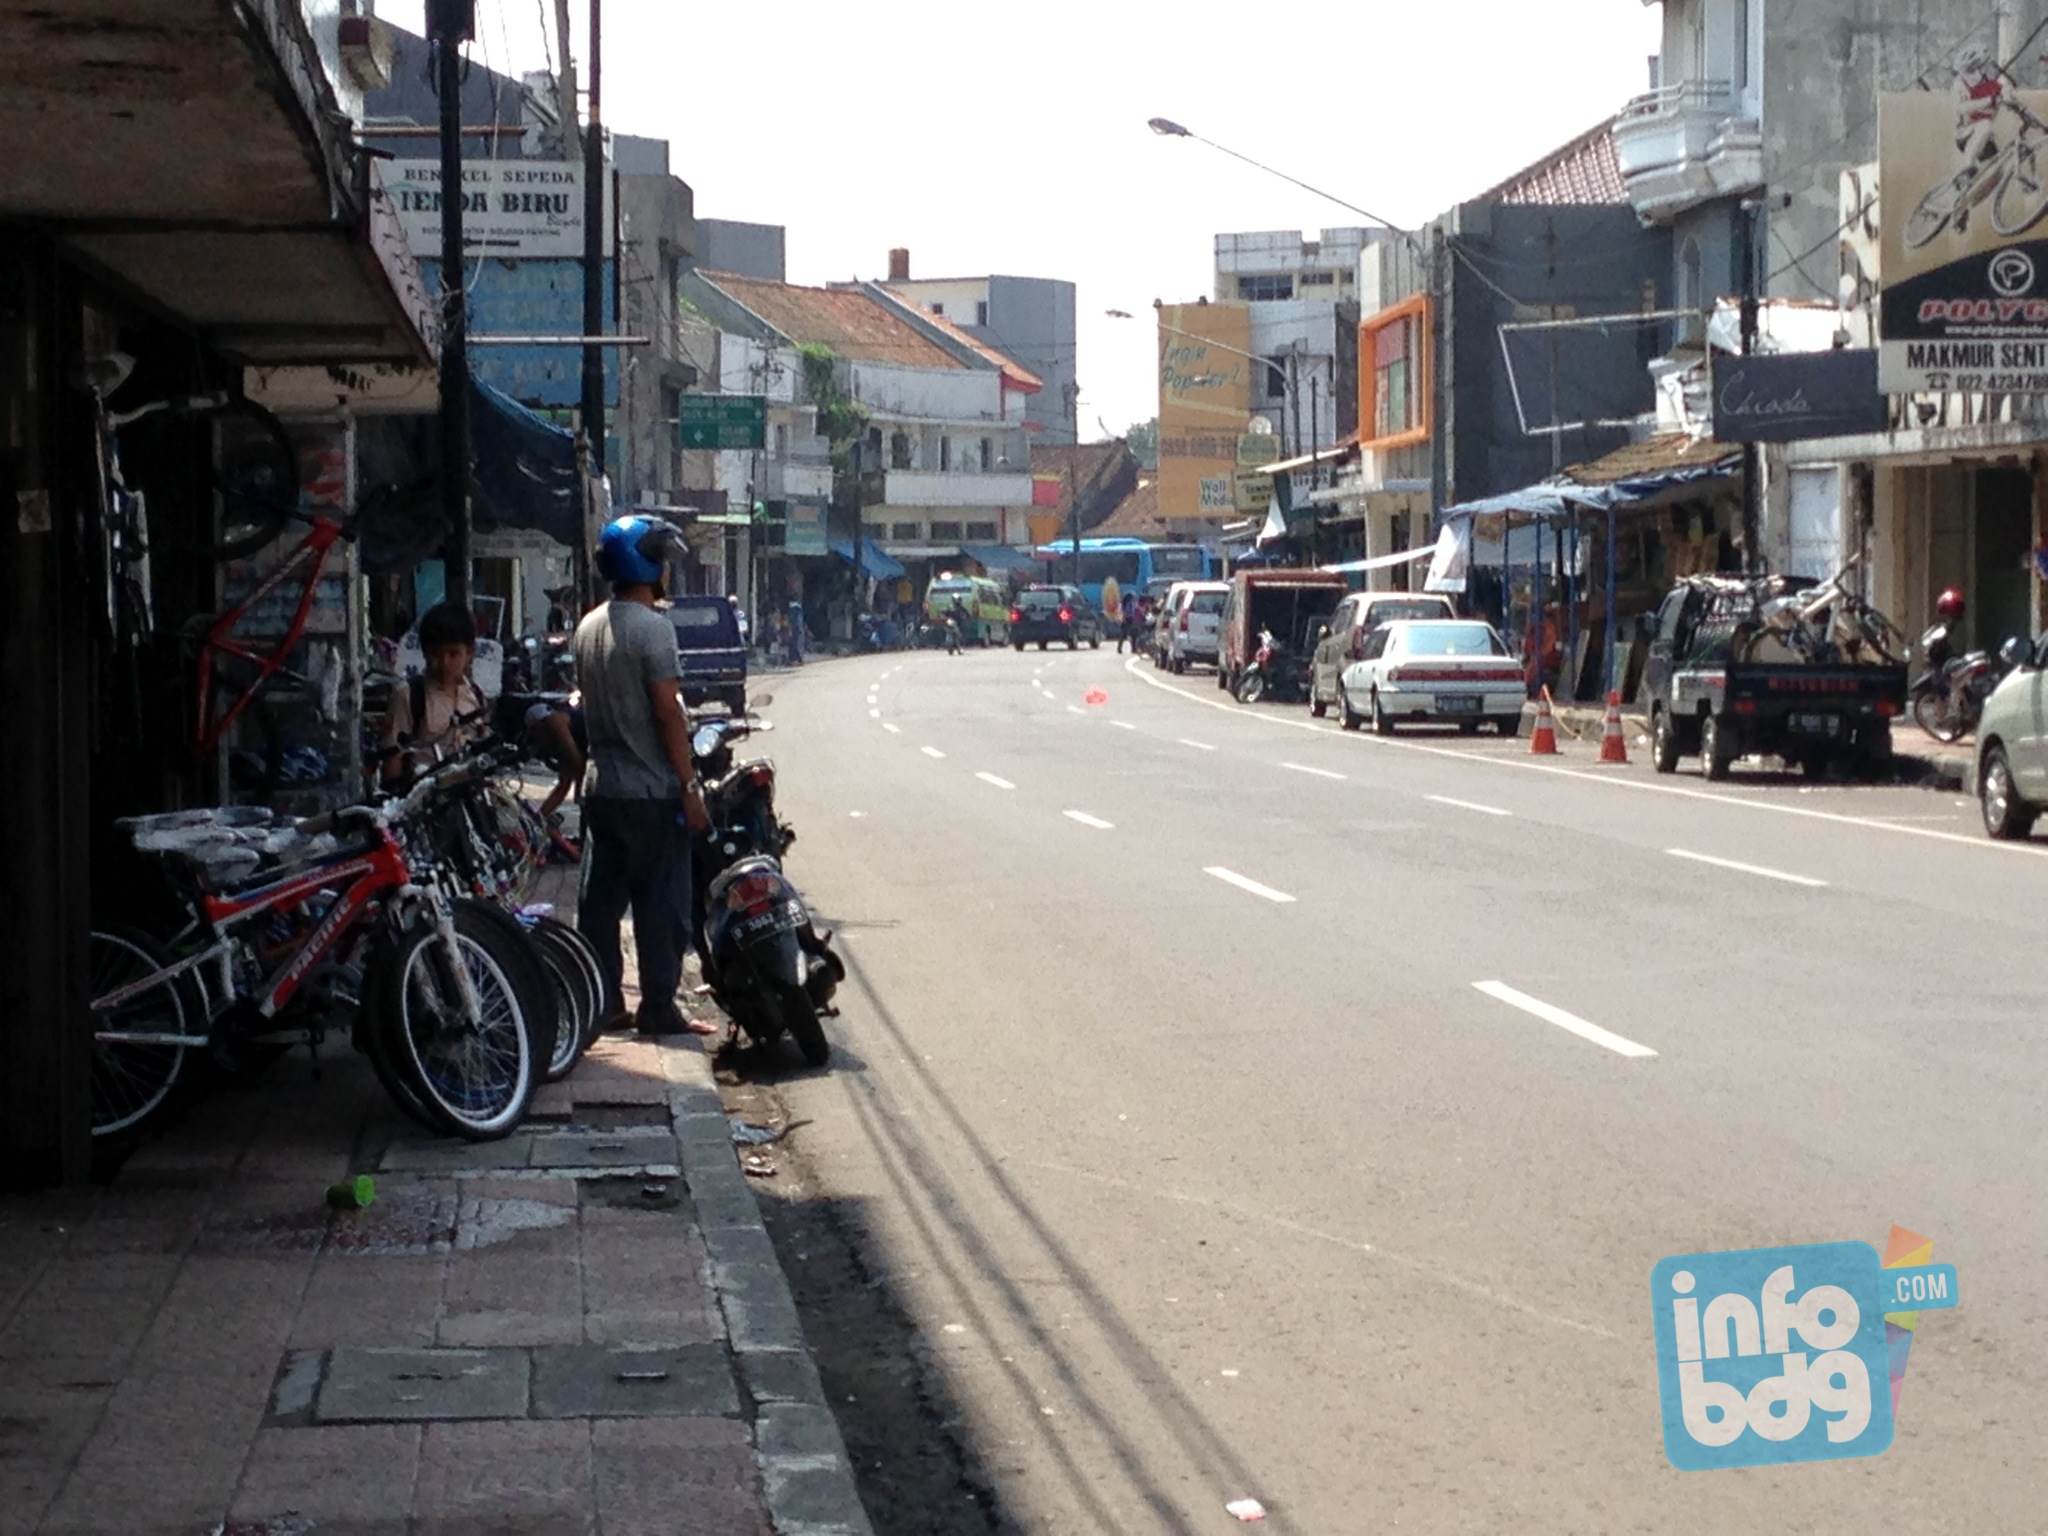 Disinilah Pusat Sepeda & Bengkel Sepeda di Kota Bandung [Gowes-ers Bandung Masuk...]